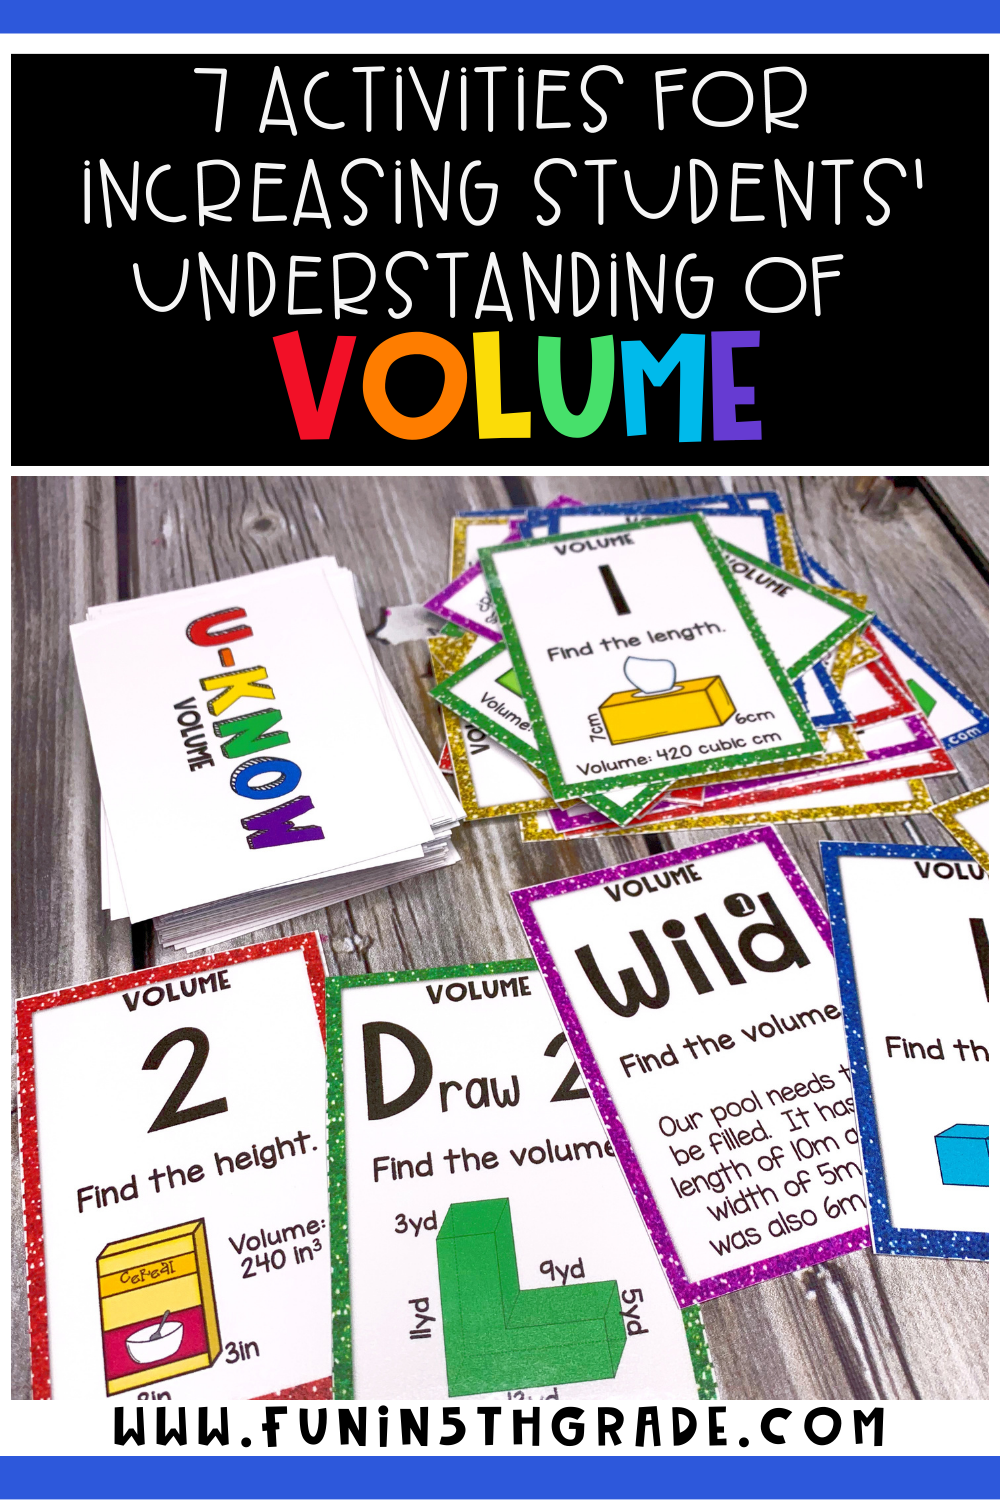 Activities for Increasing Students' Understanding of Volume Pinterest Image